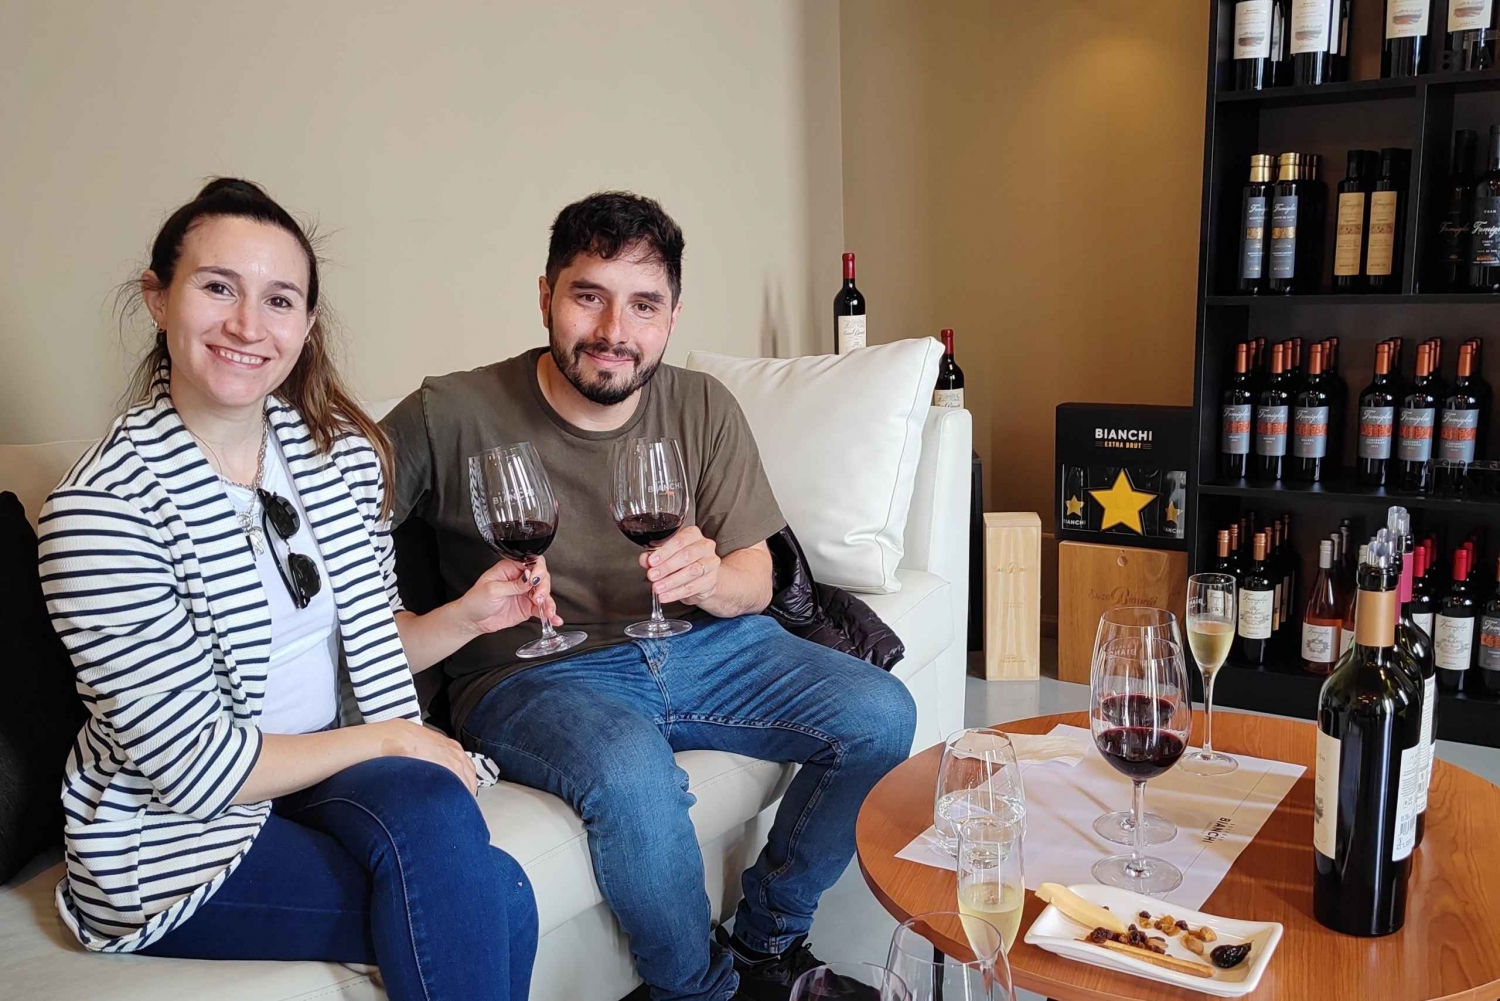 Mendozas bedste vingårde - private ture med alt inkluderet!